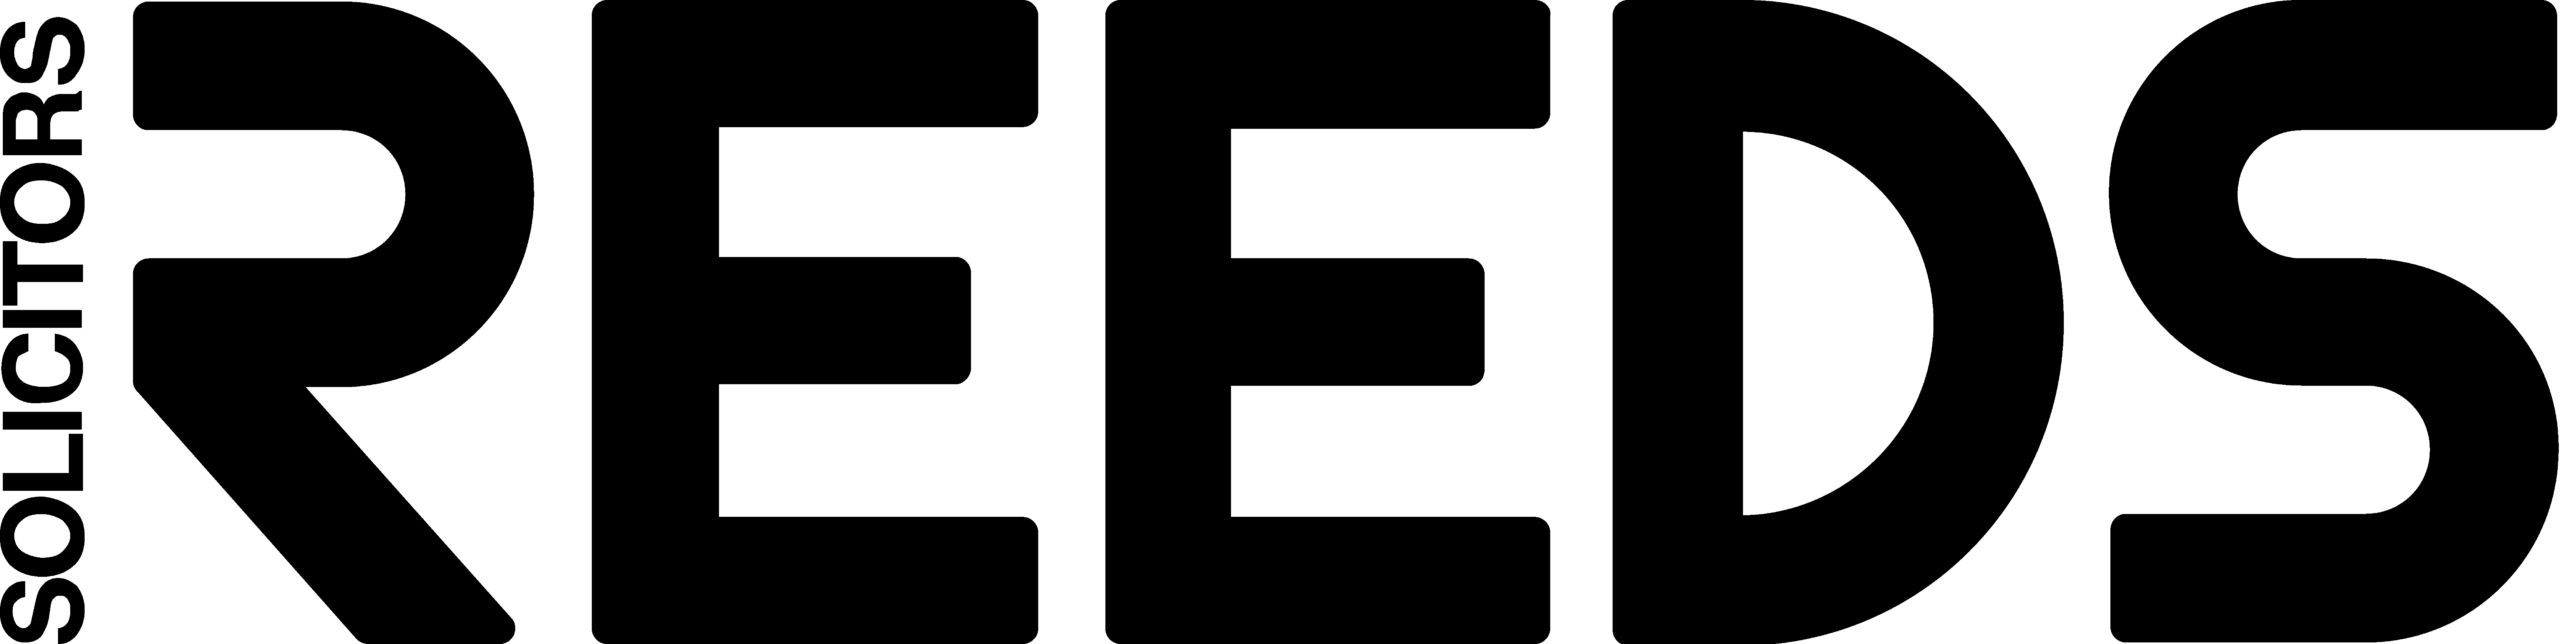 Reeds Solicitors LLP logo